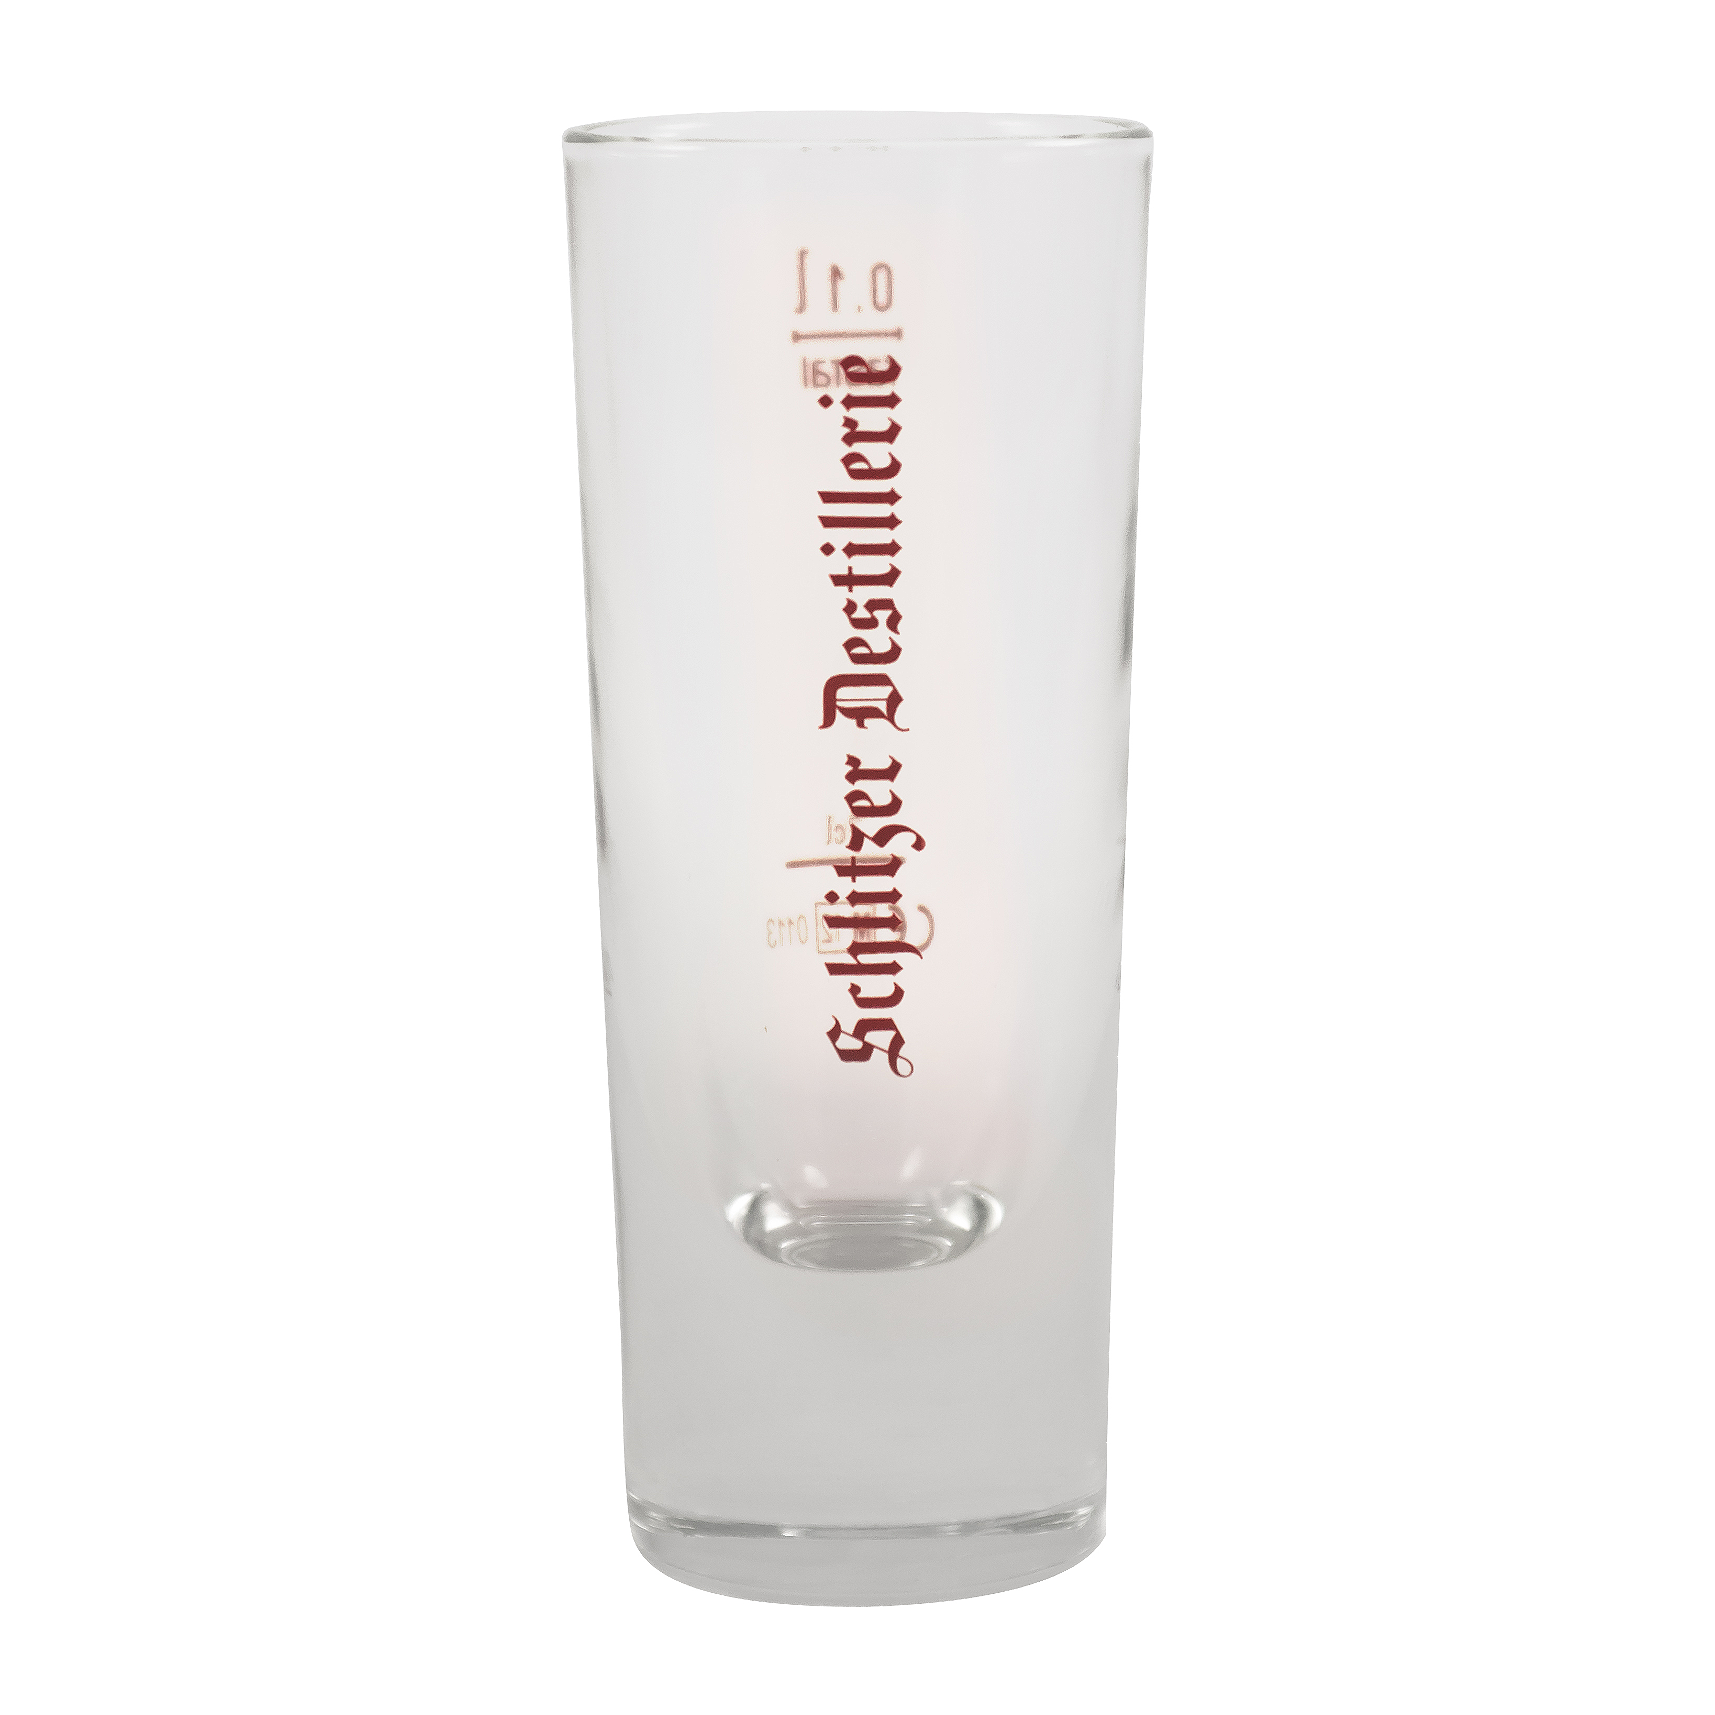 Milchglas Longdrink Glas mit Schlitzer Destillerie Gravur 0,1 l